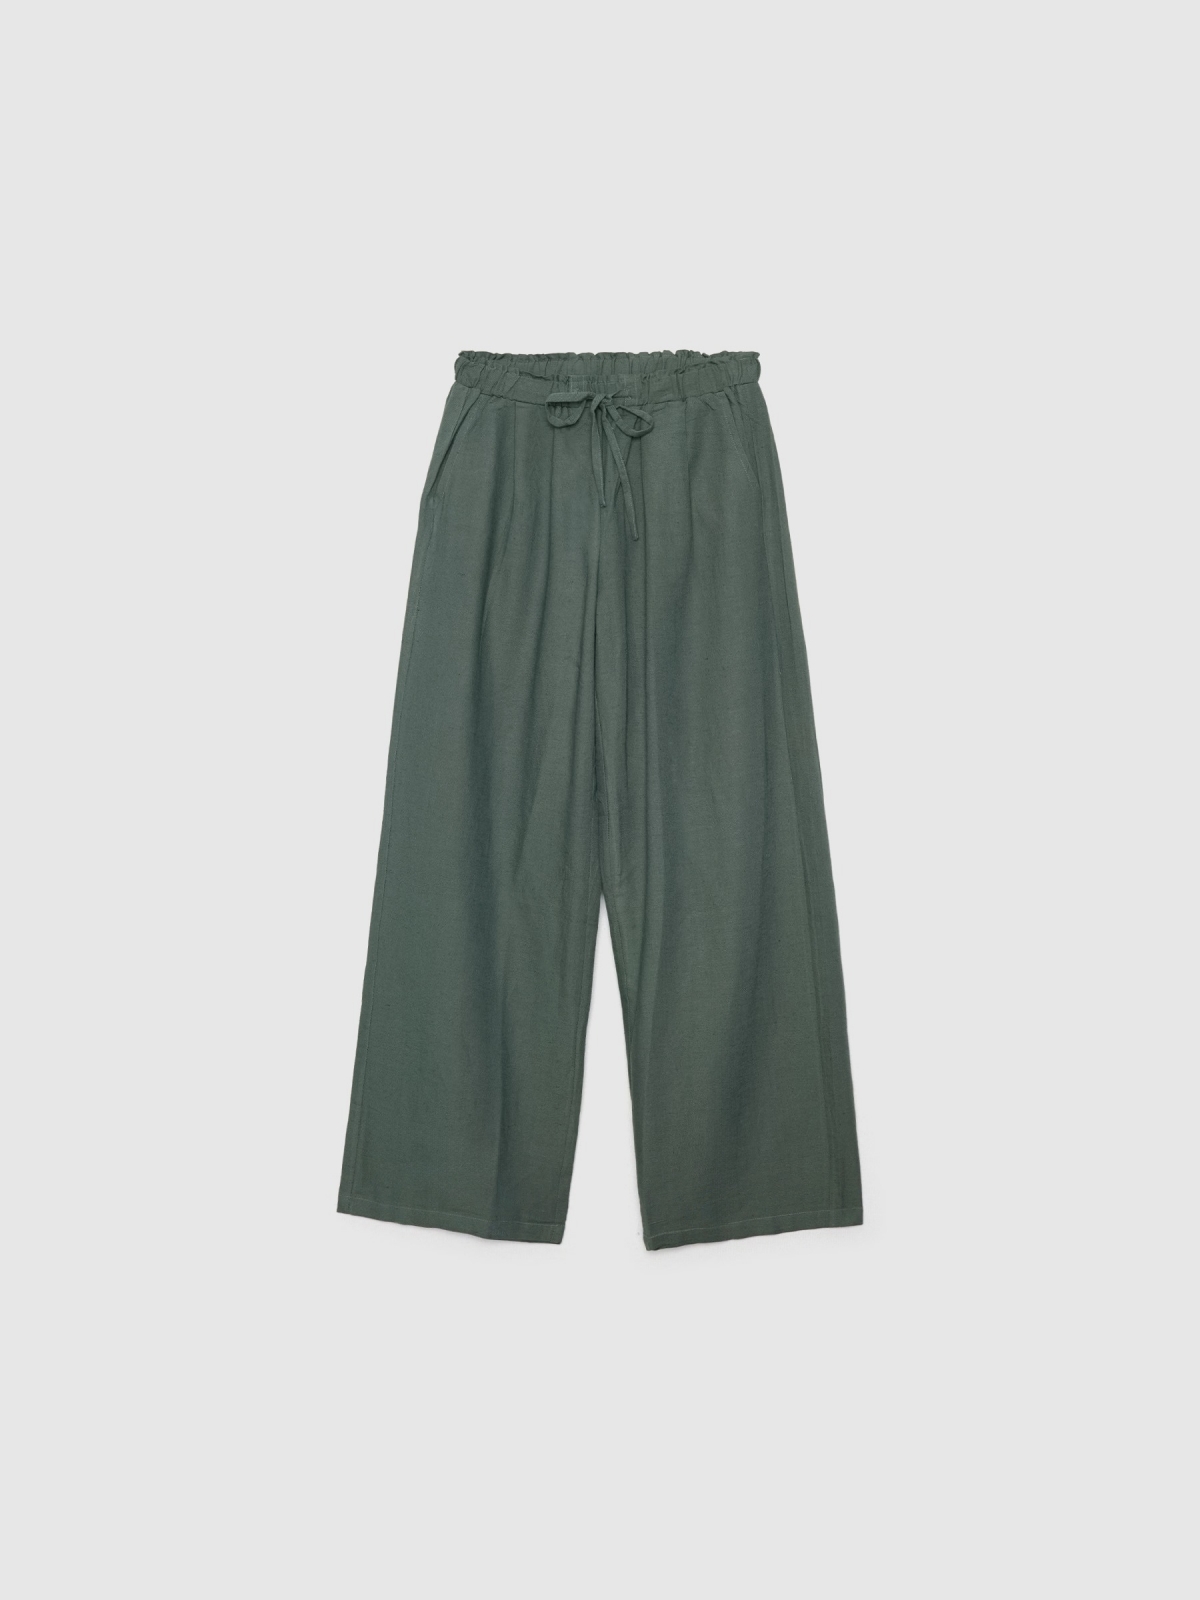  Wide-leg linen pants dark green